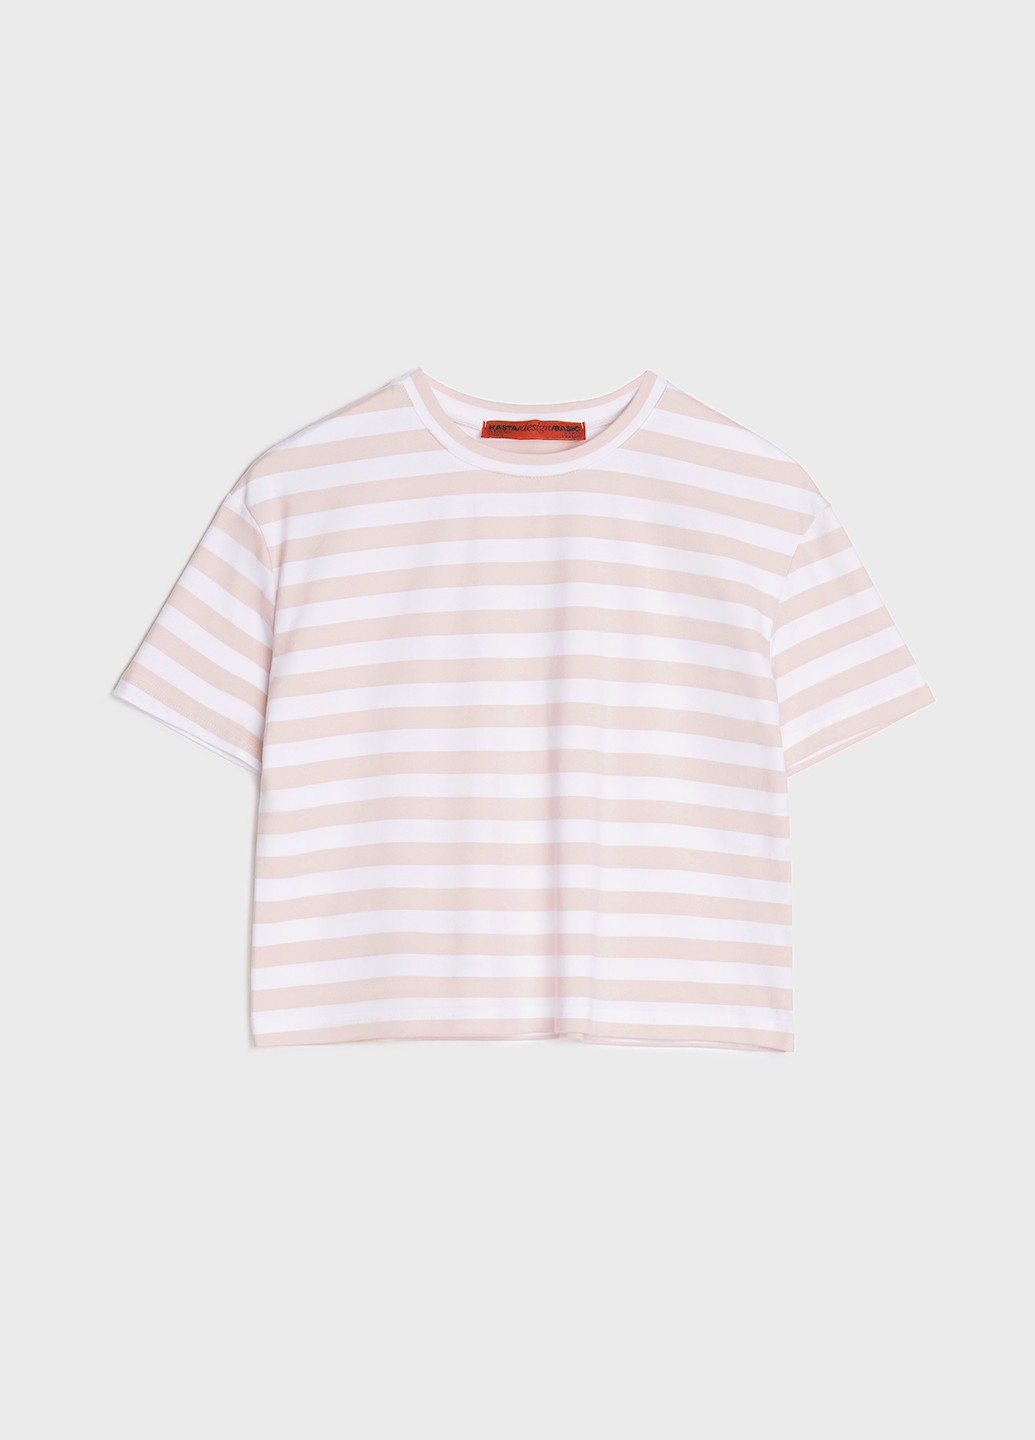 Светло-розовая летняя футболка женская укороченная в полоску KASTA design